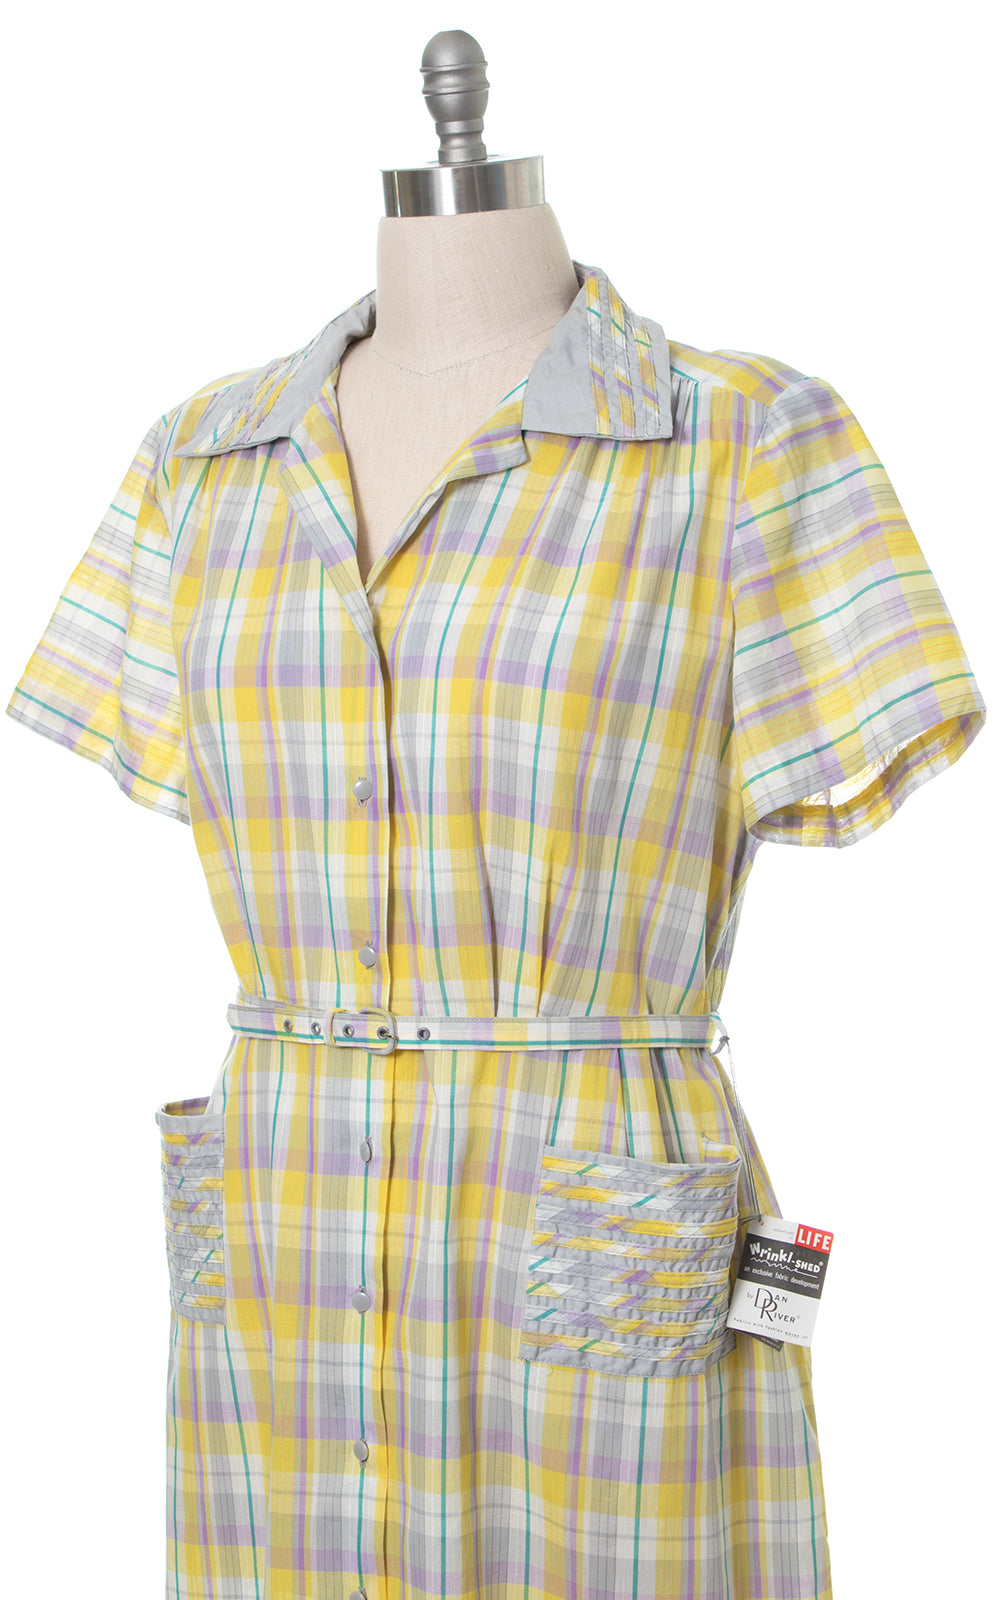 1950s Deadstock Plaid Shirtwaist Dress